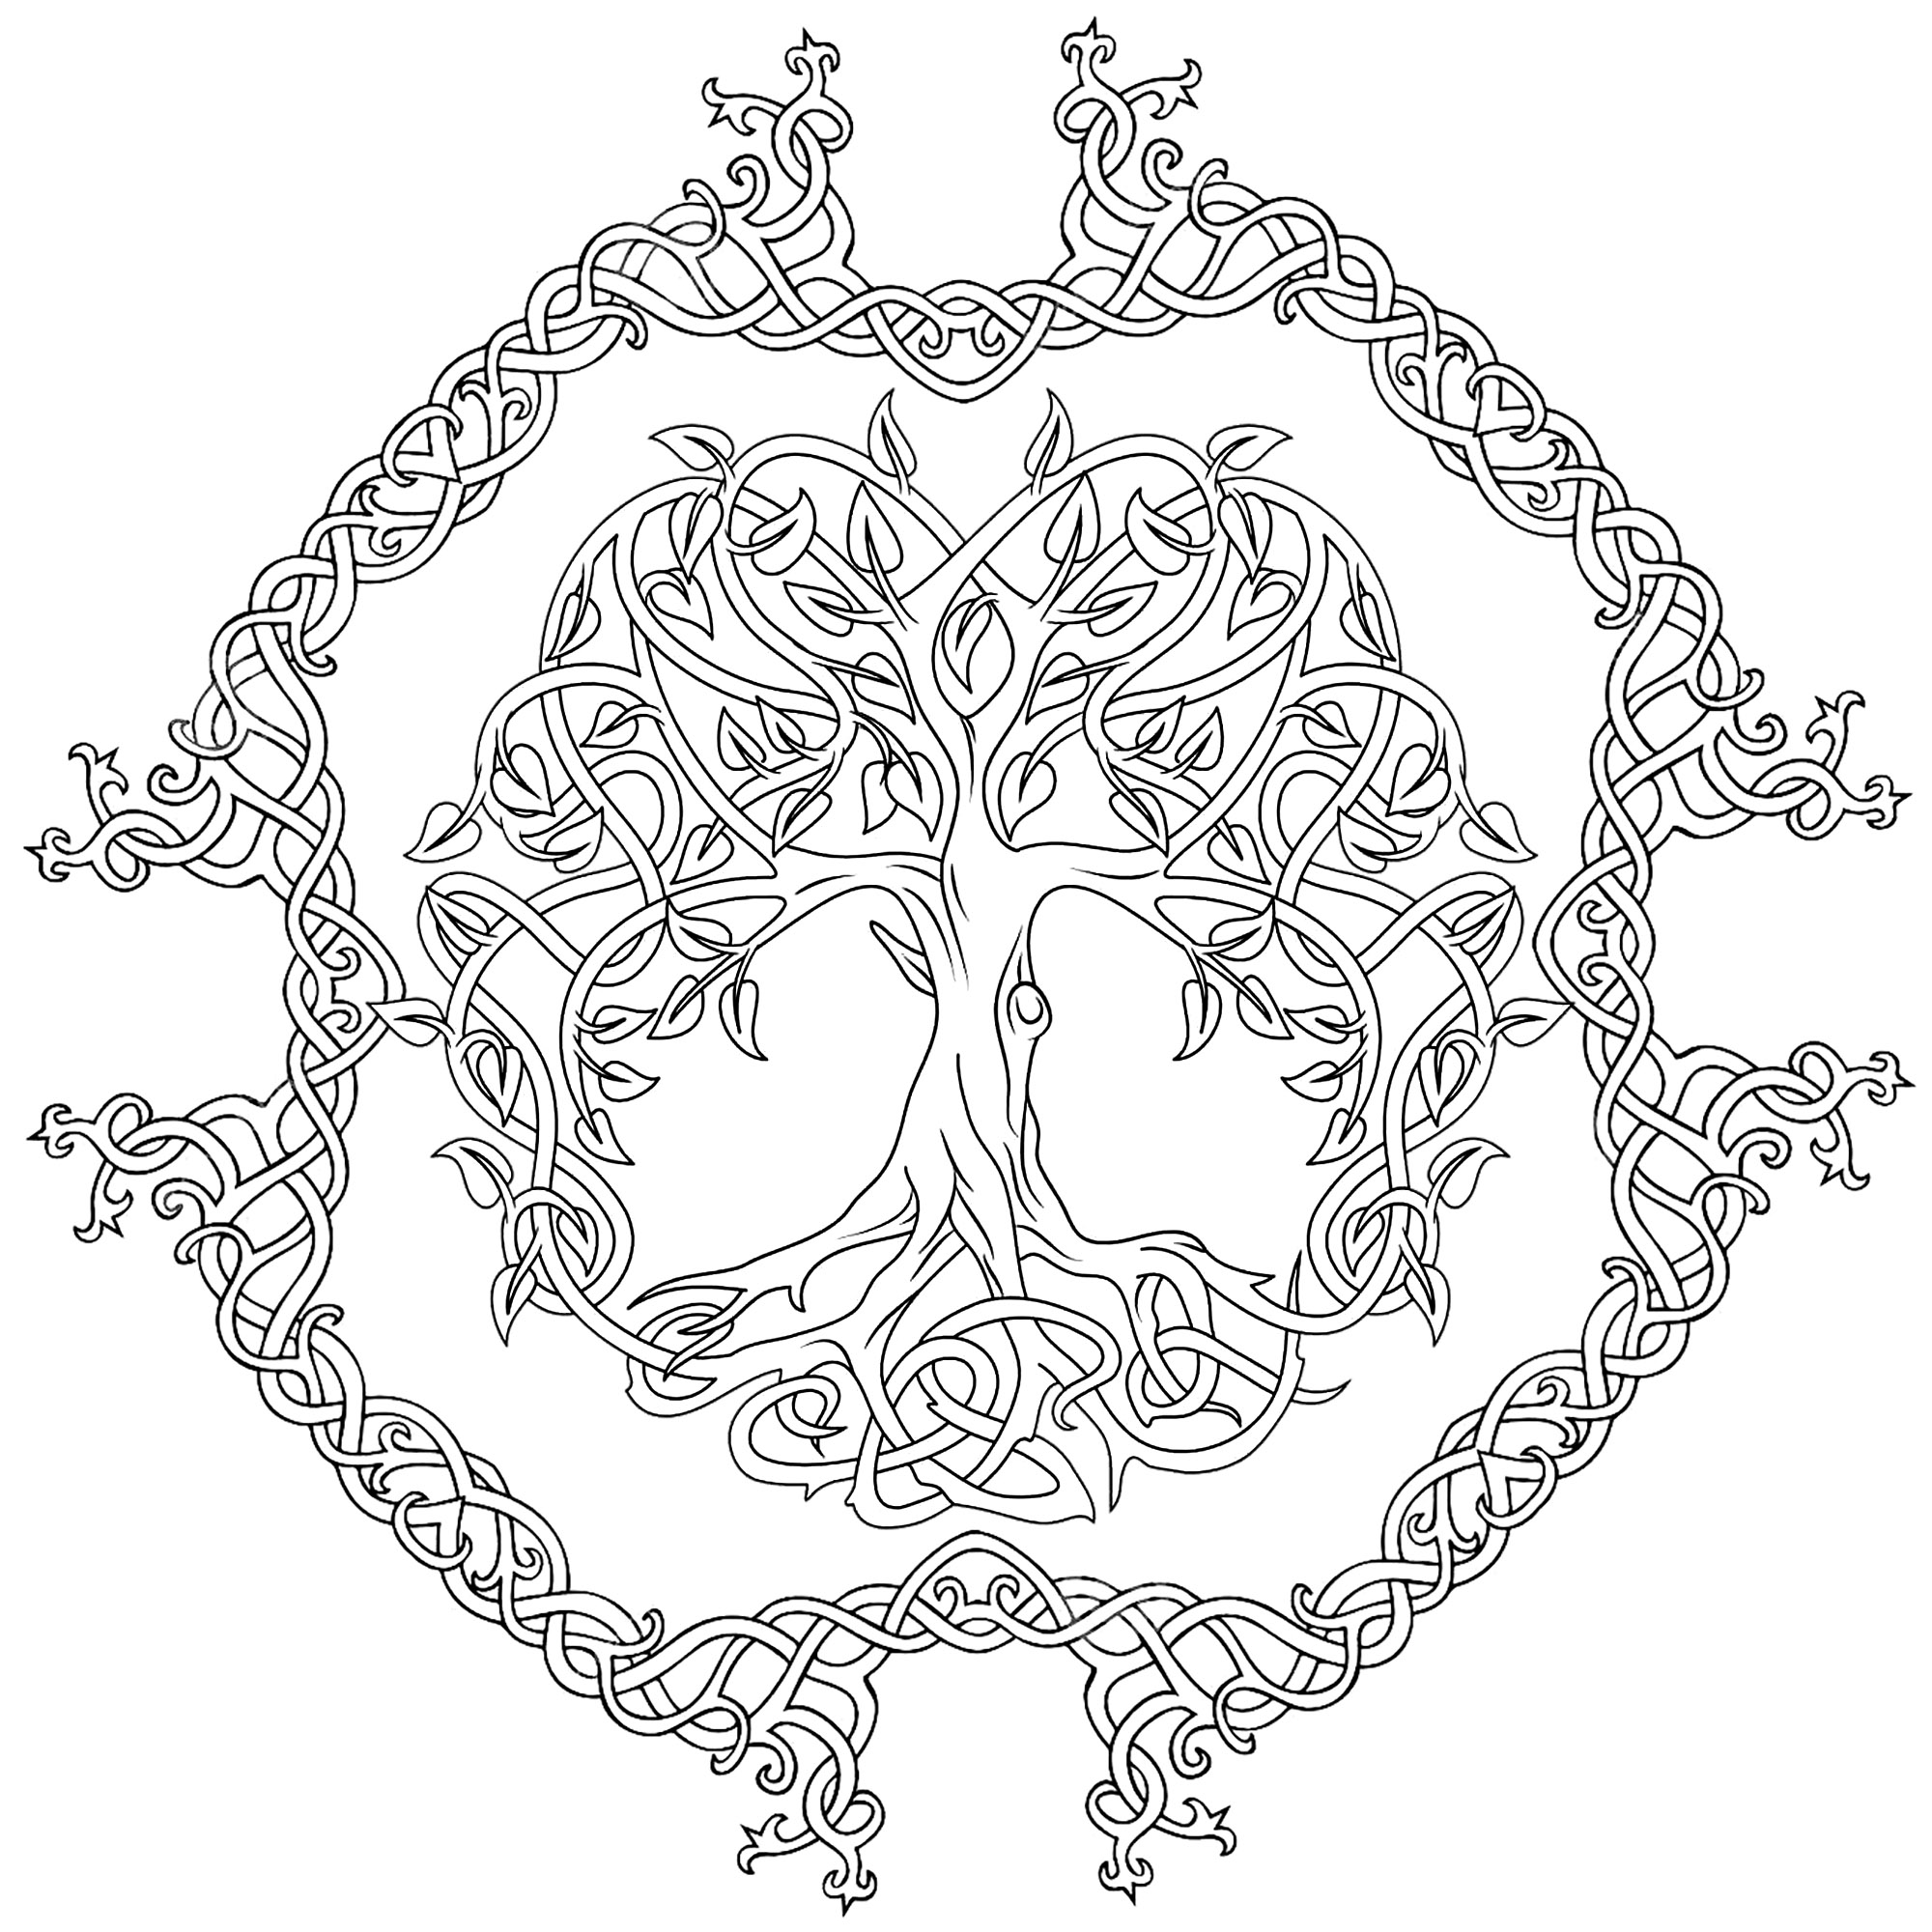 Arbre de la vie (Tree of life) avec contour composé de motifs celtiques. L'arbre de vie celte représente le concept des forces de la nature qui convergent pour créer l'harmonie.